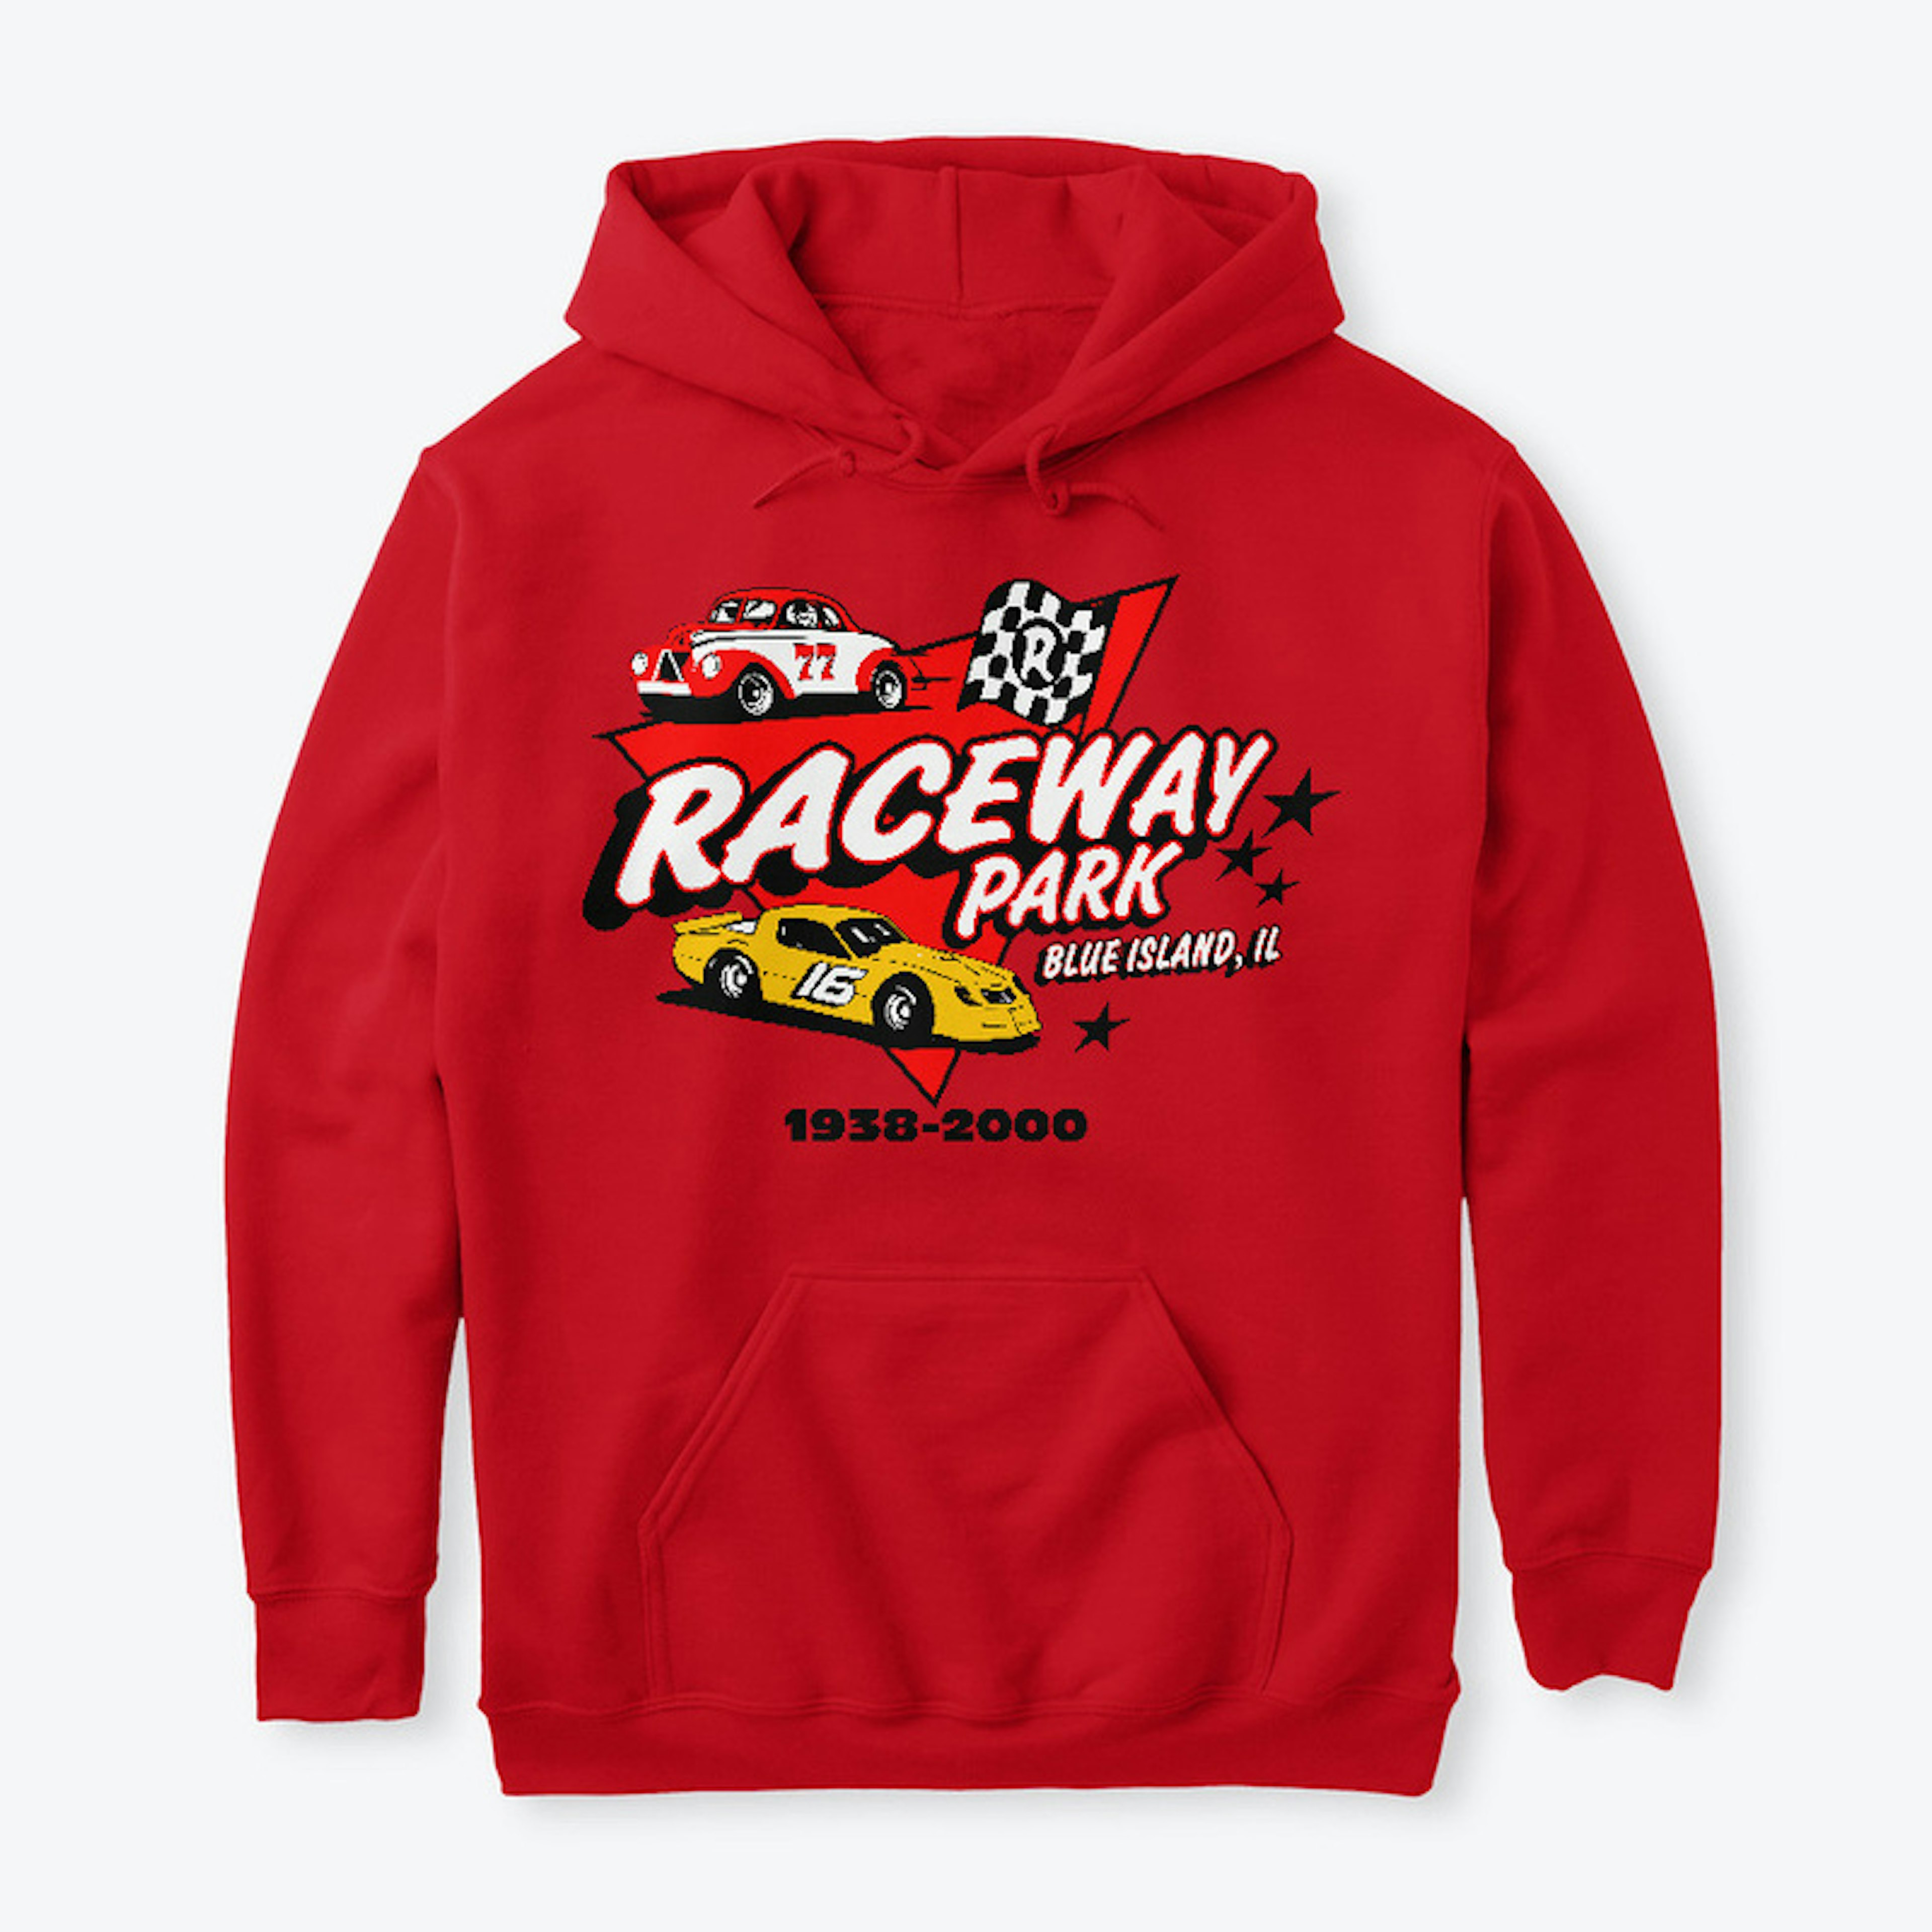 Raceway Park - Color Options